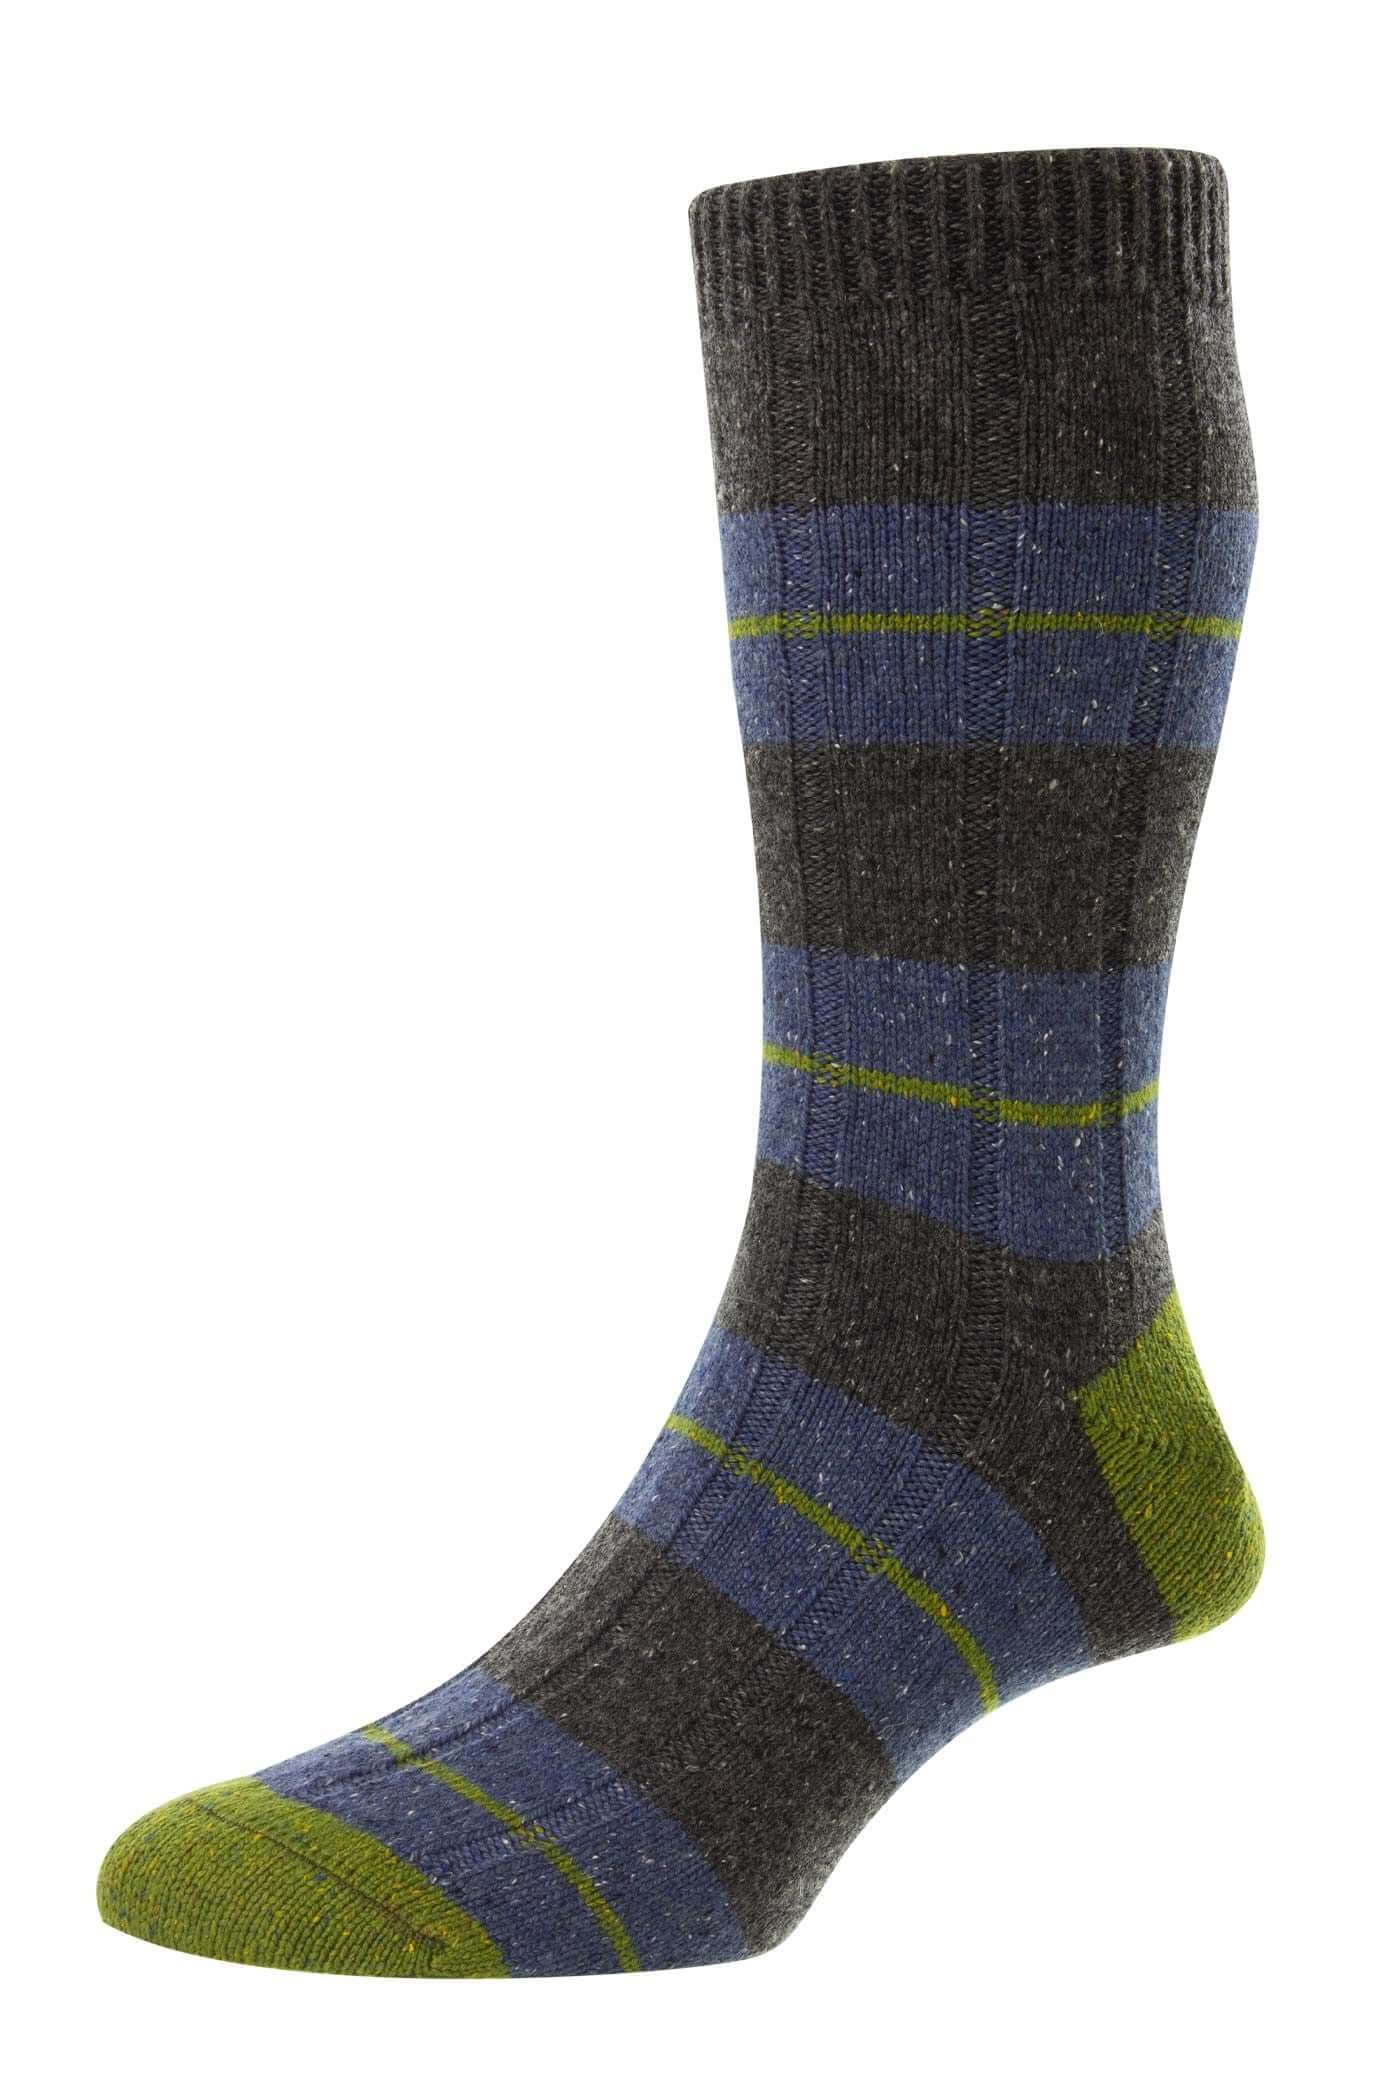 Introducing the New Scott Nichol Socks